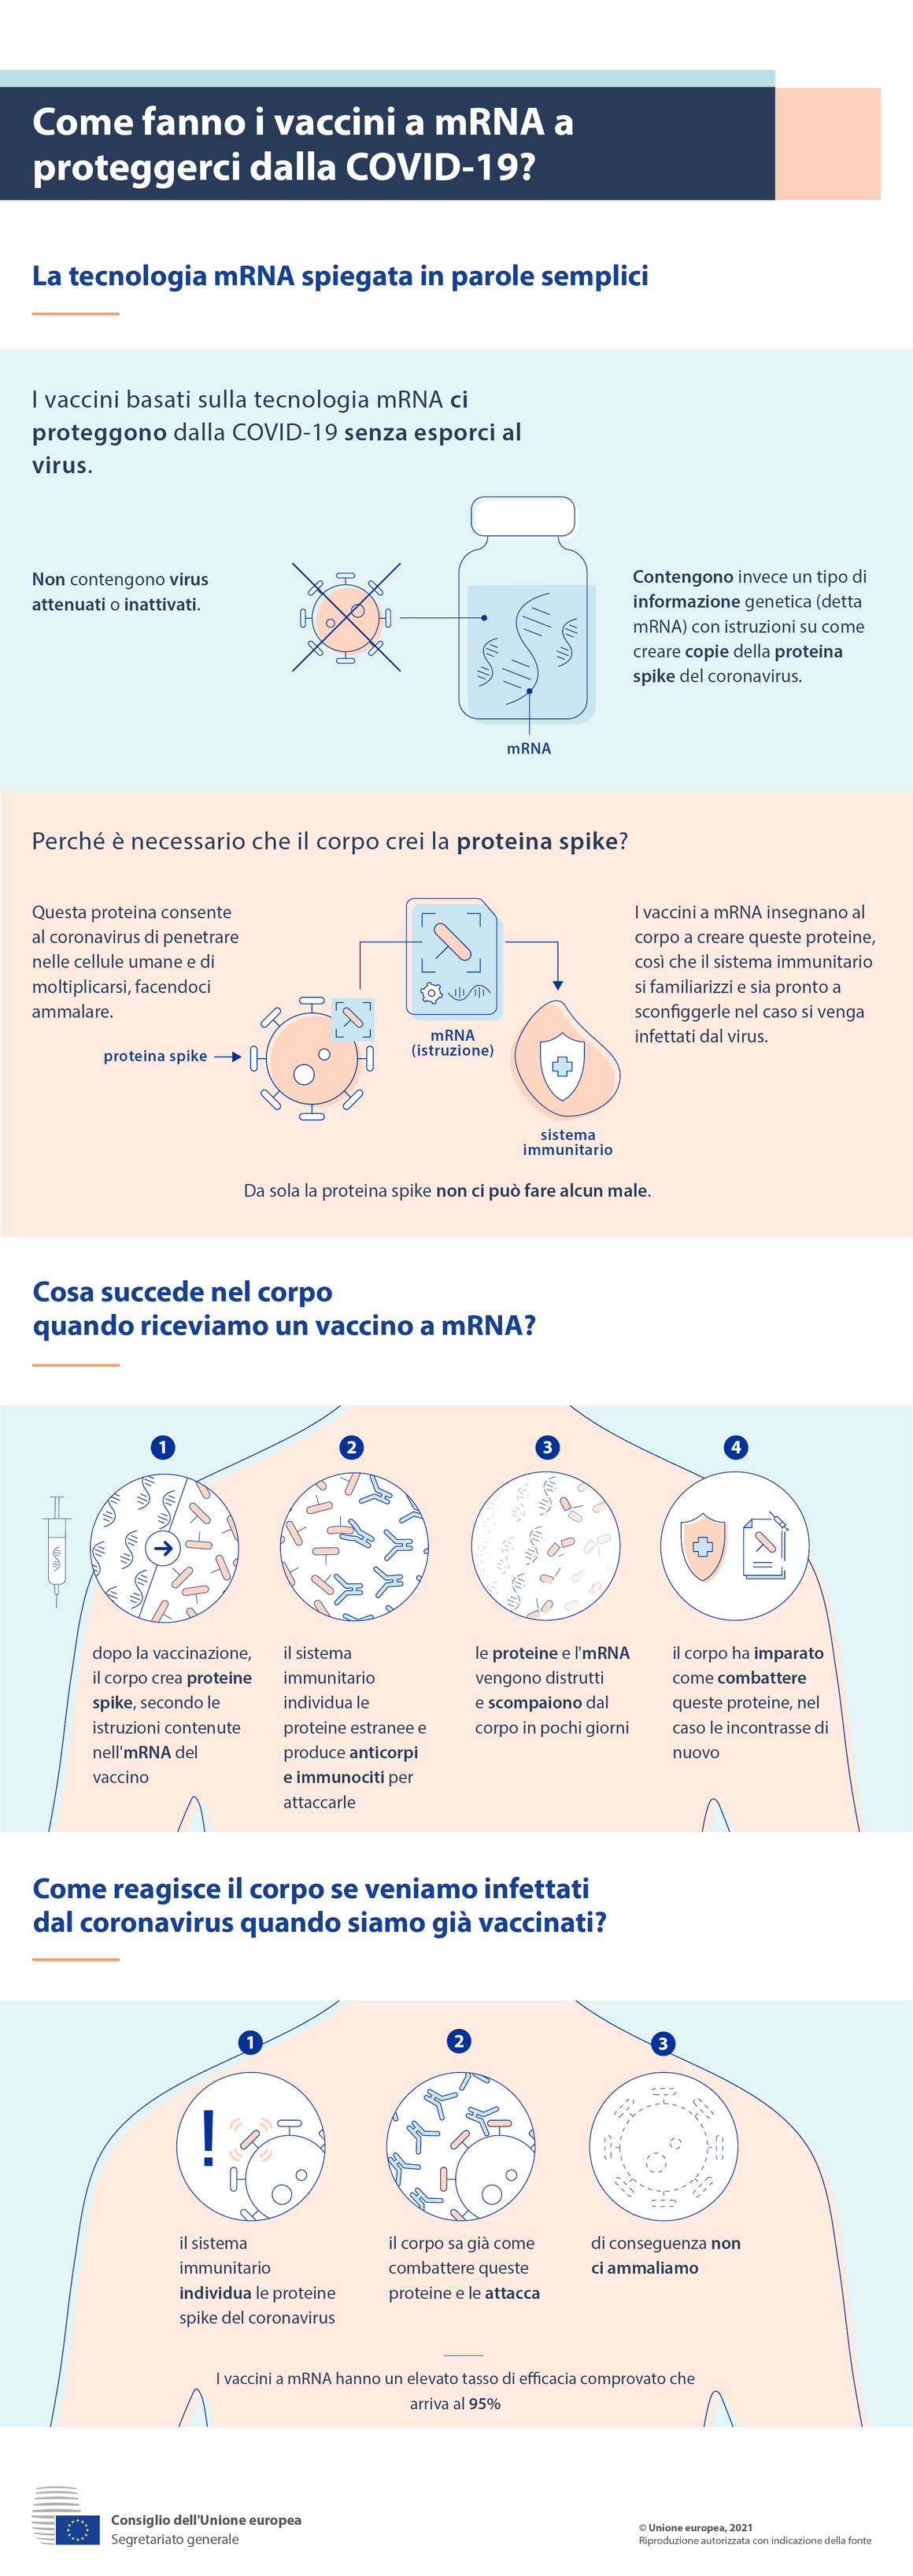 Infografica - Come fanno i vaccini a mRNA a proteggerci dalla COVID-19?